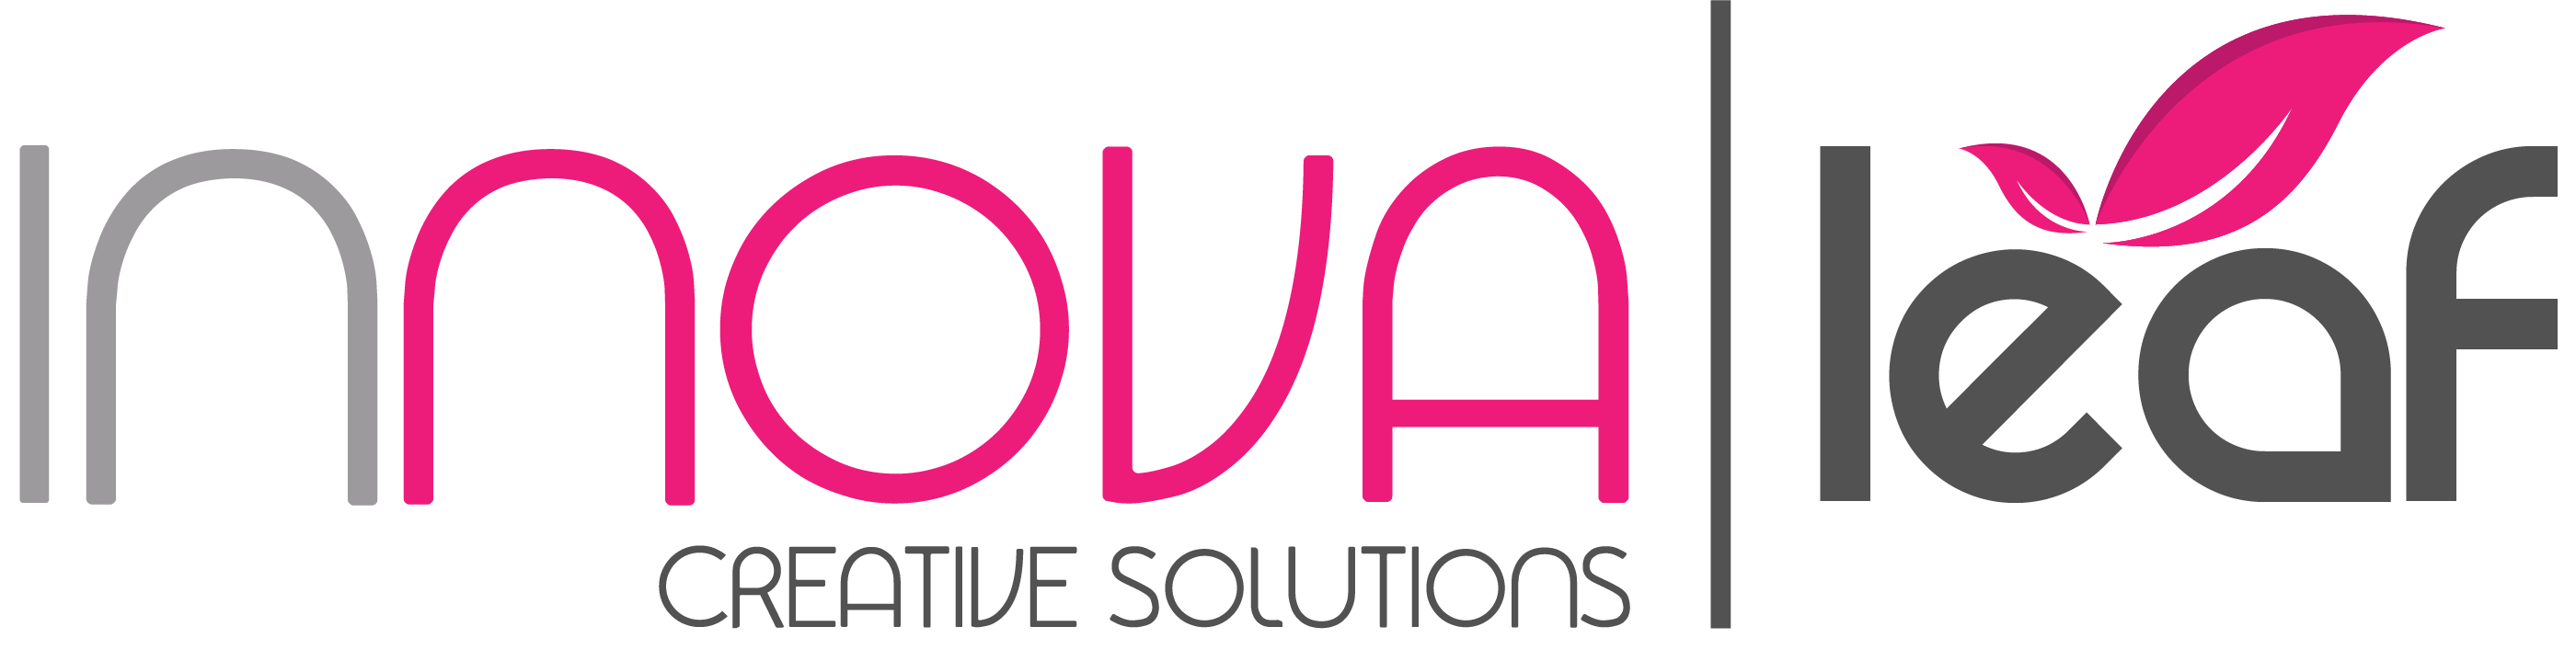 innova Leaf Creative Solutions logo big